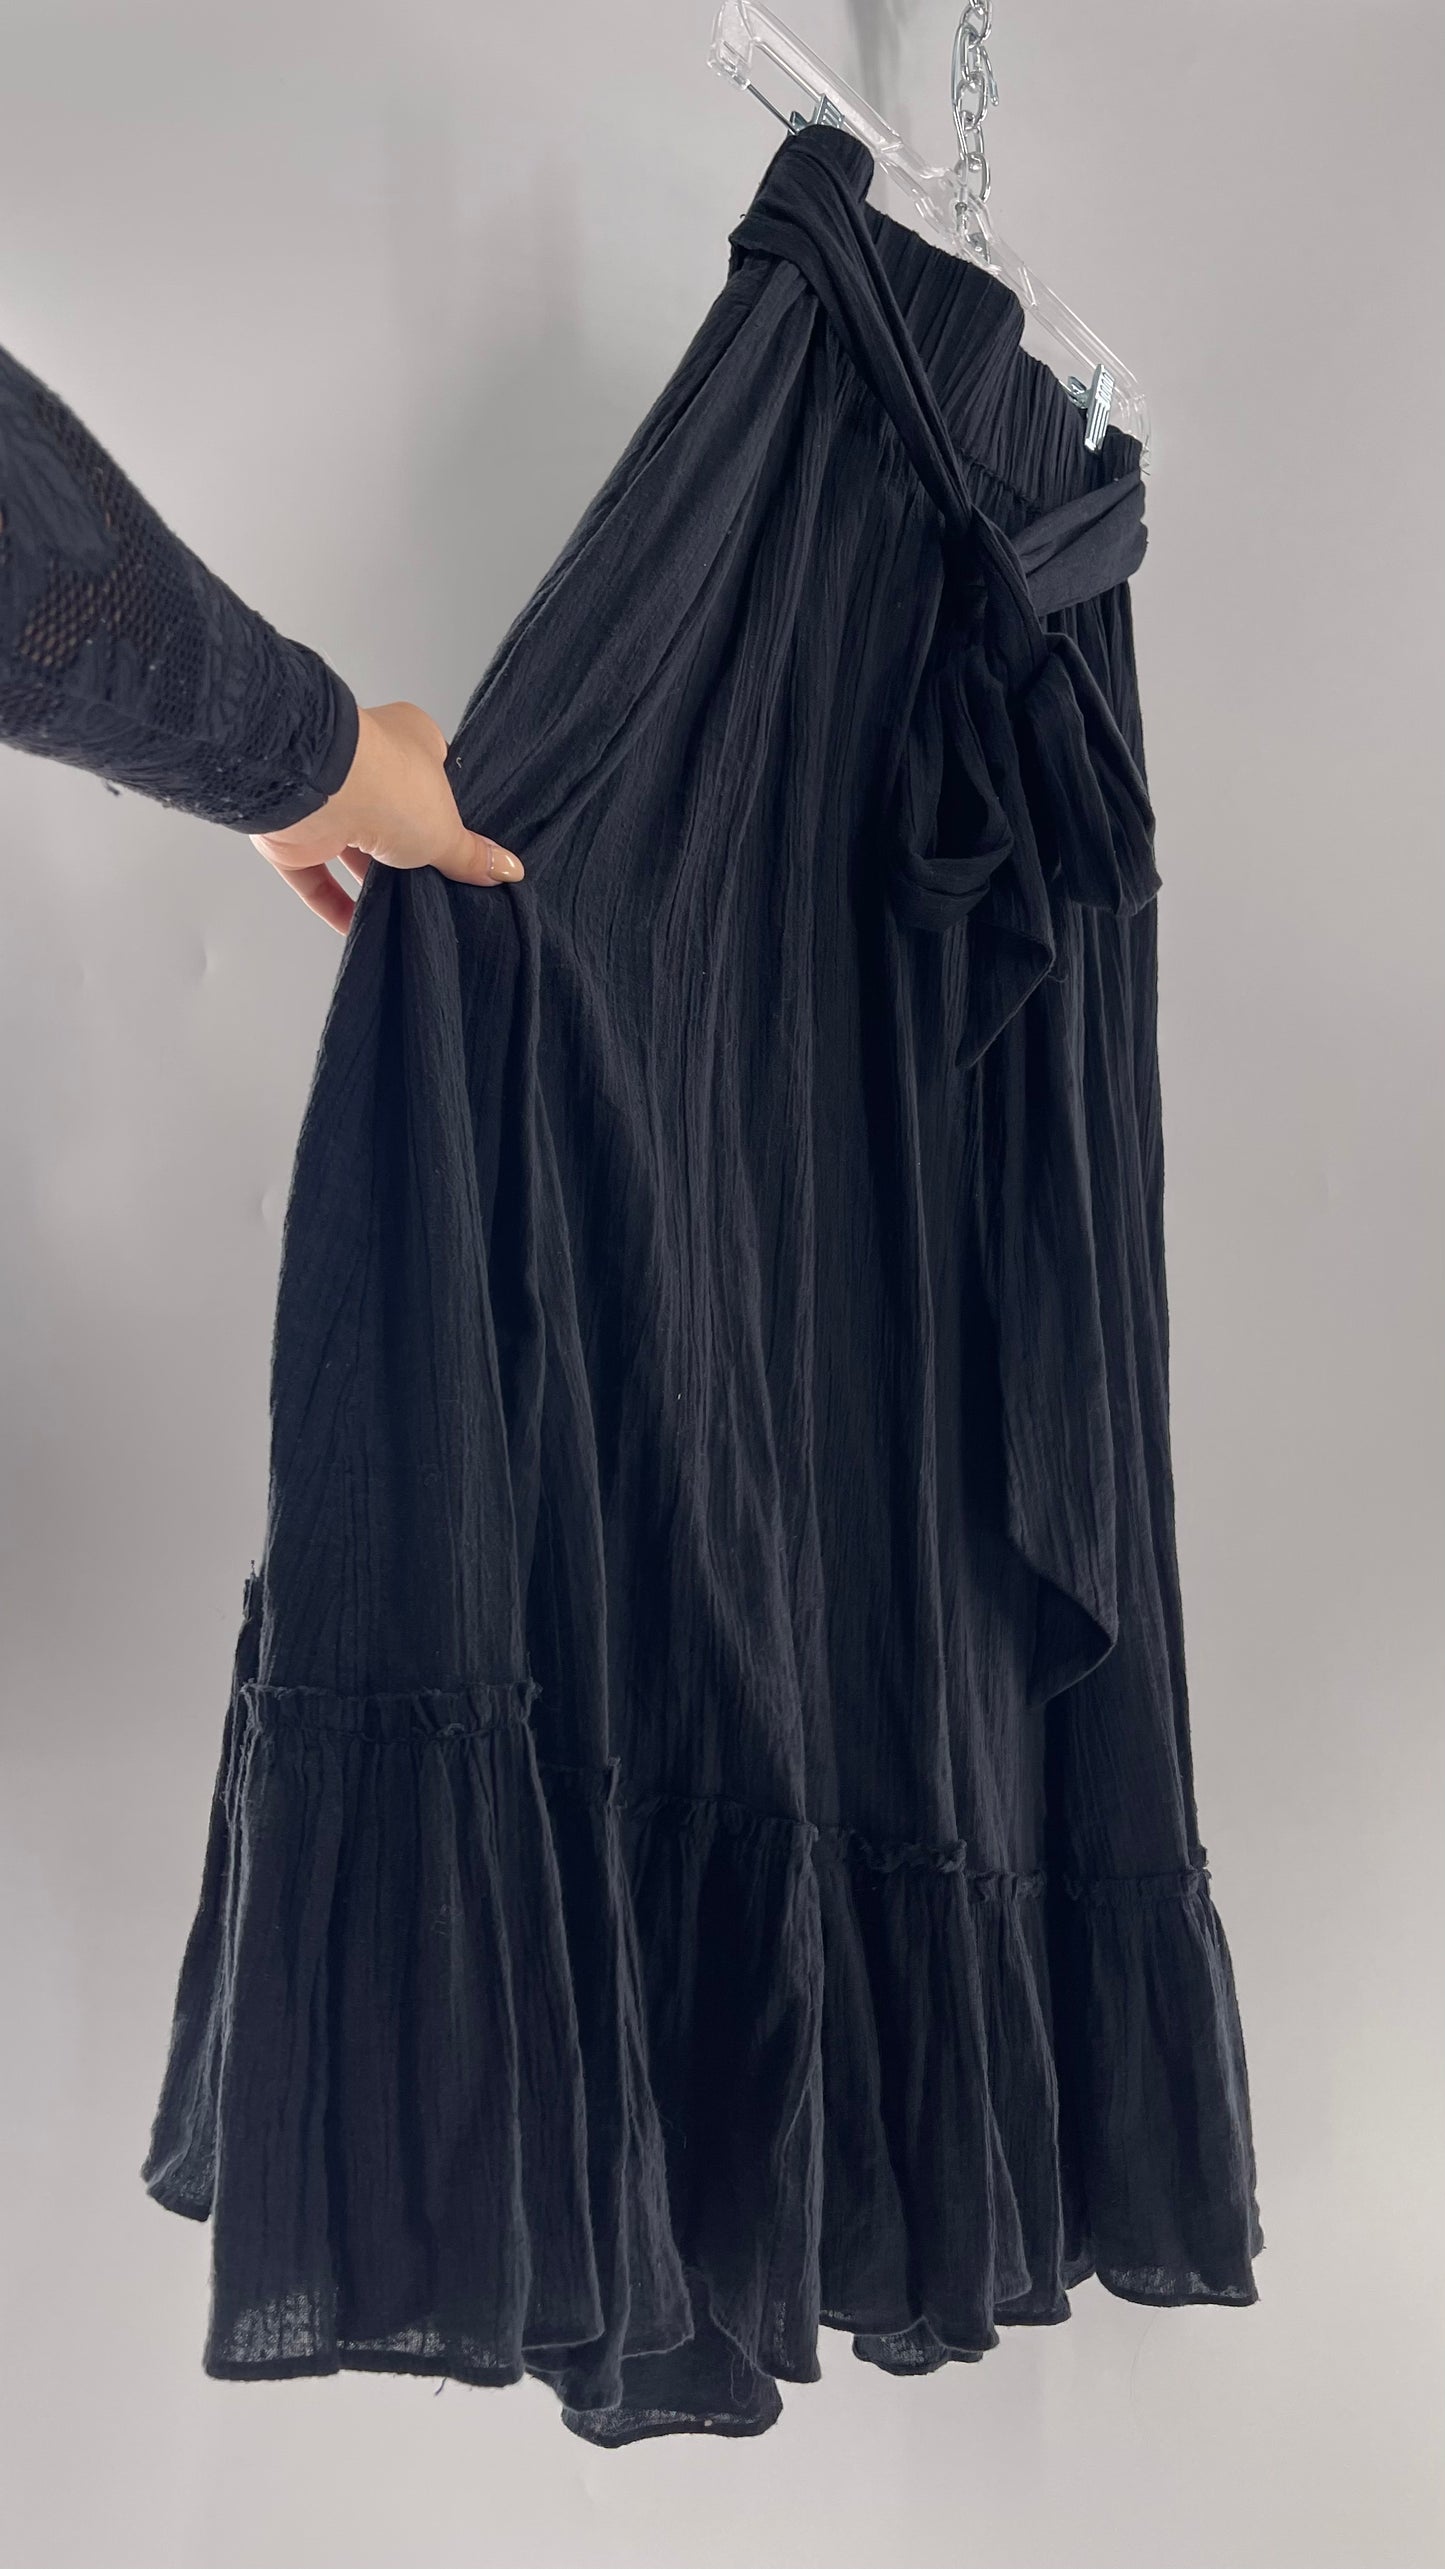 Free People Black Floor Length Skirt (Medium)